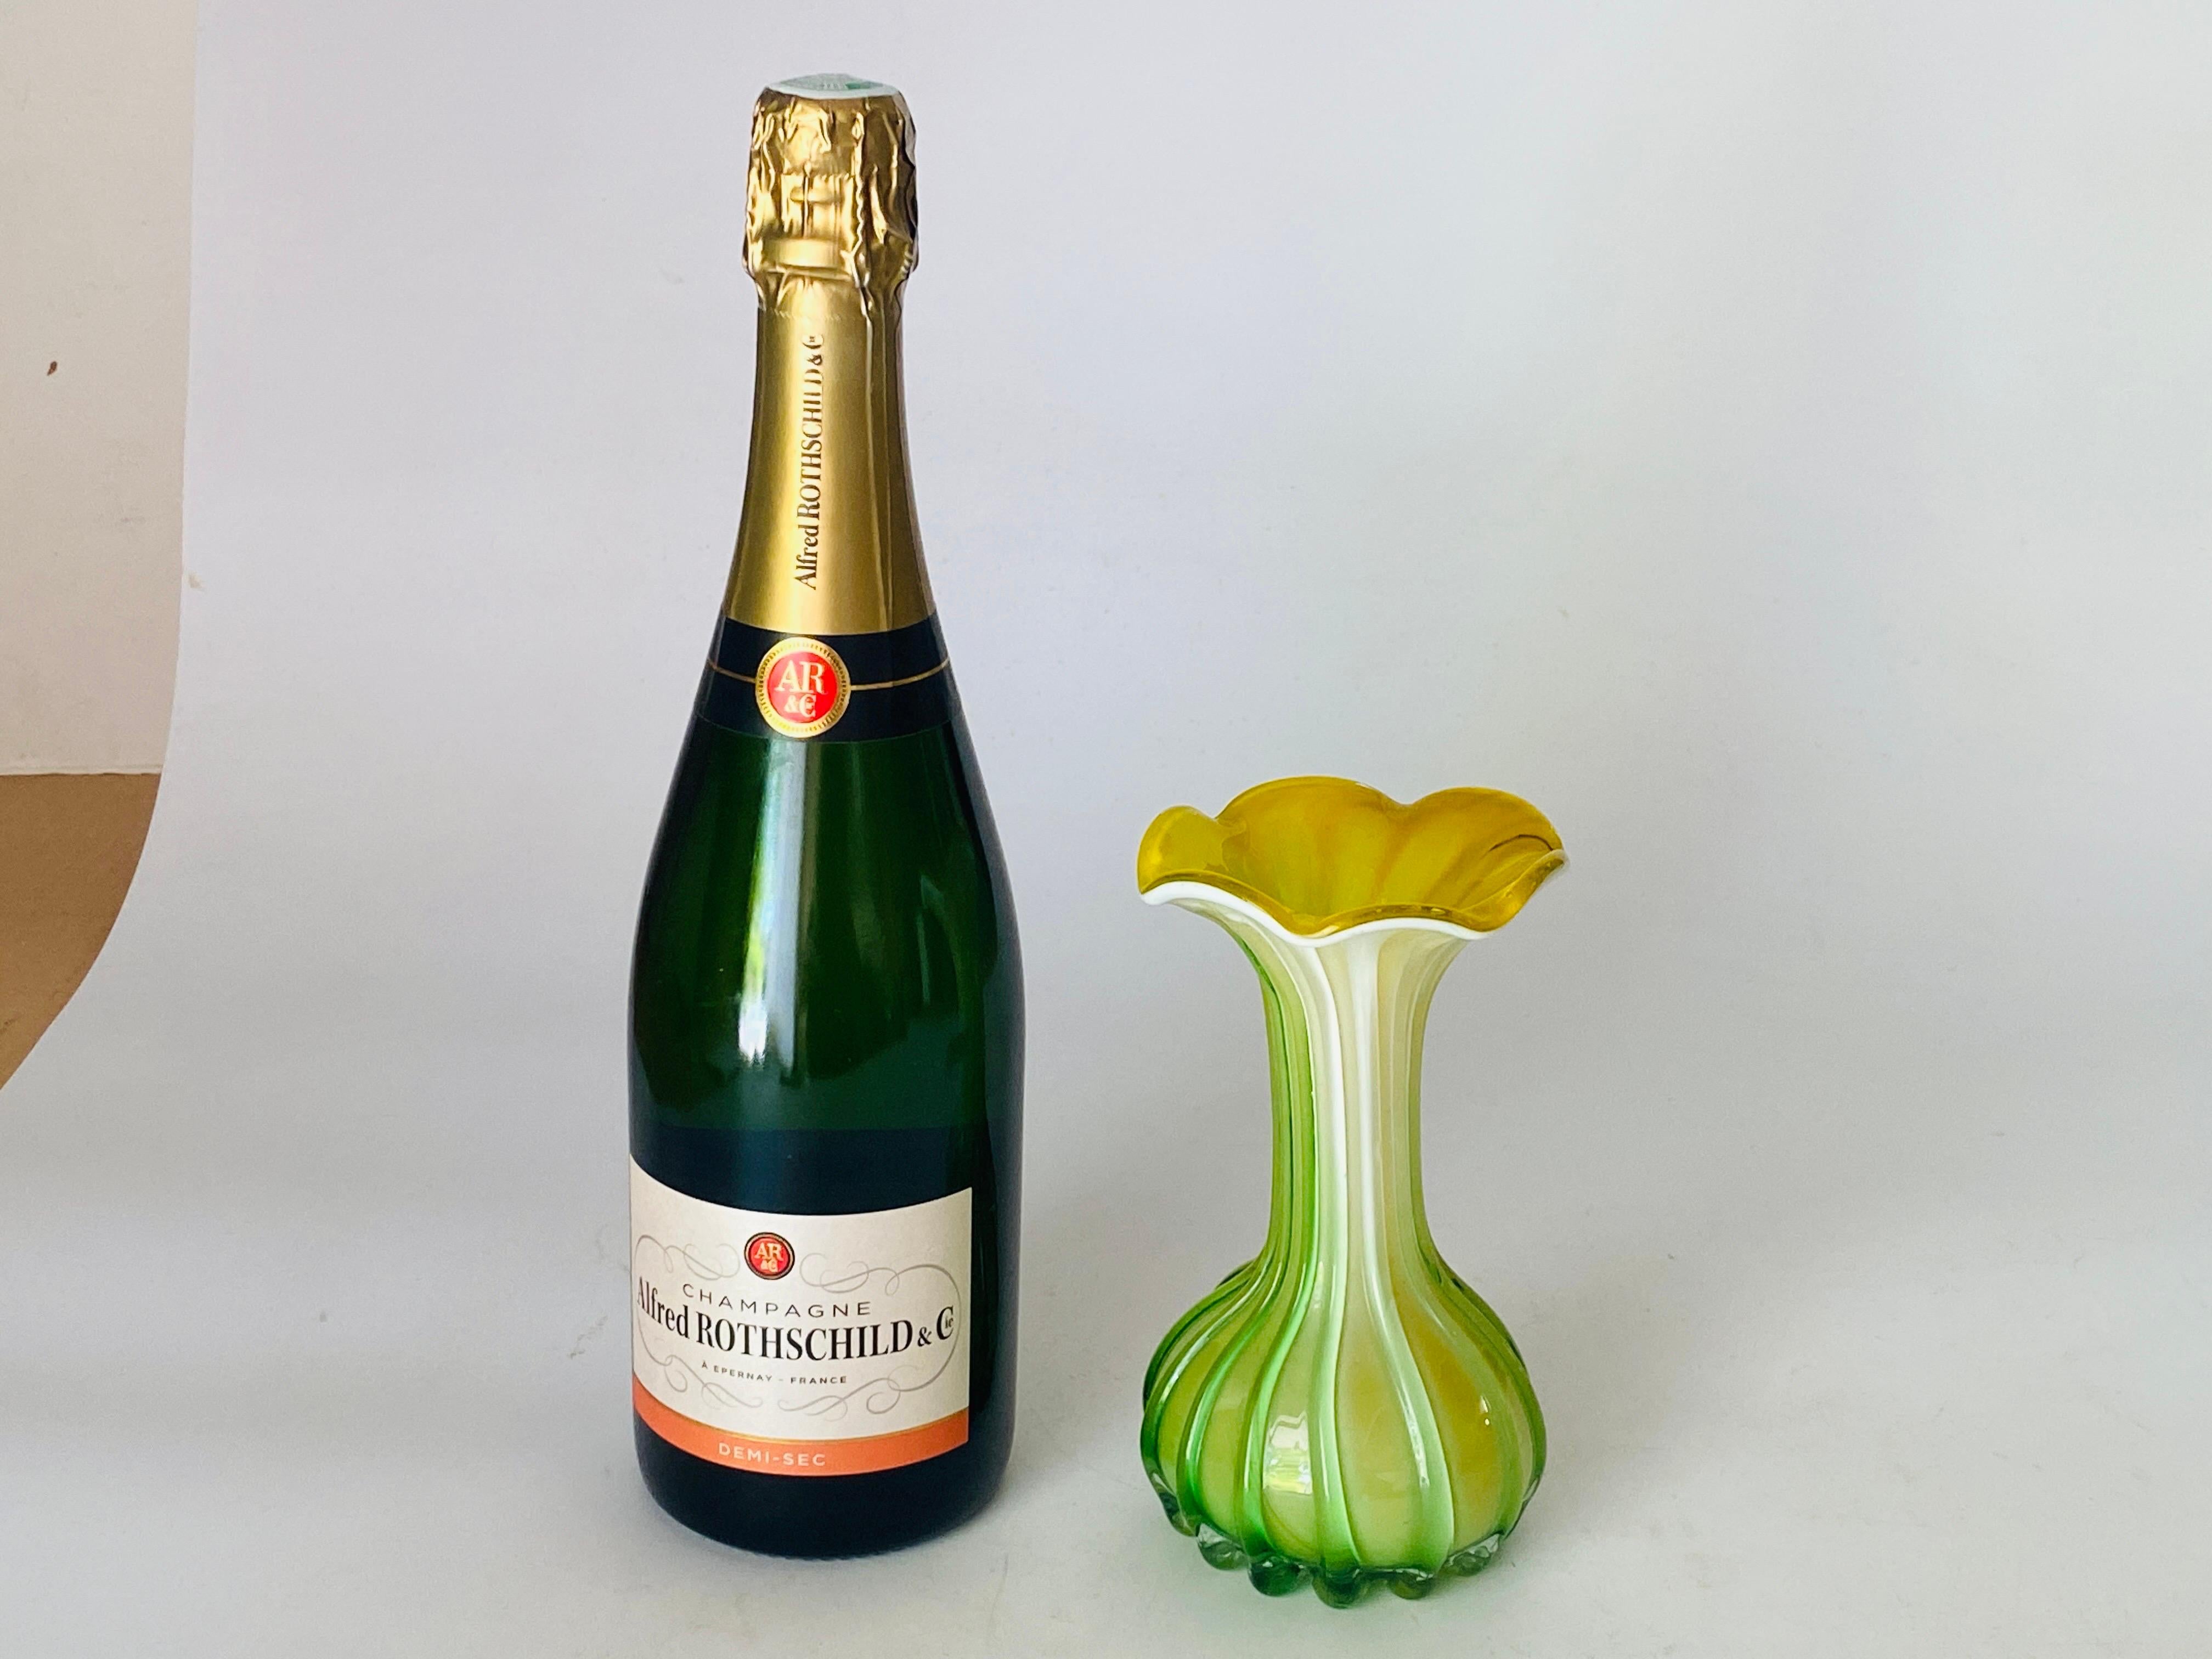 Diese Vase ist im Stil der Venini-Vasen gehalten. Es wurde um 1970 in Italien hergestellt.
Die venezianischen Farben sind grün und gelb.